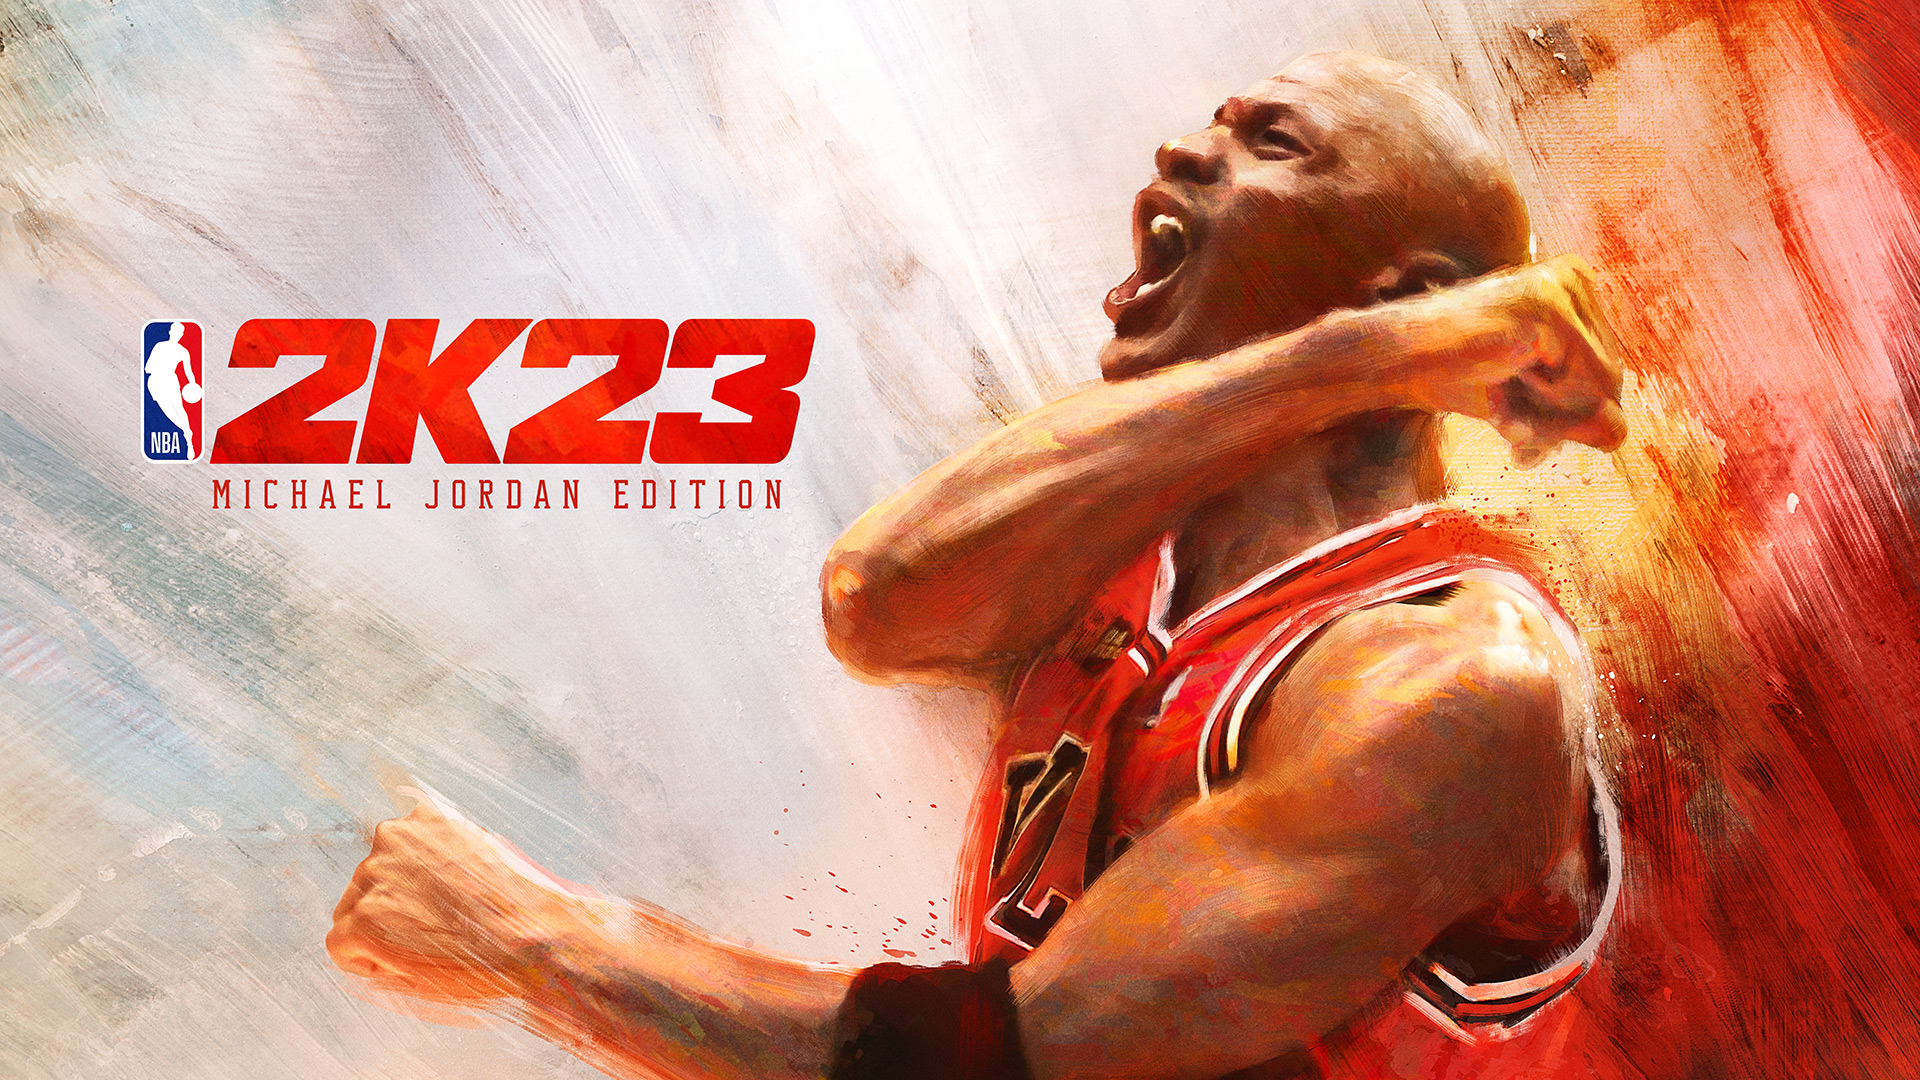 NBA 2K23, date de sortie annoncée : Michael Jordan est sur la couverture de l’édition Michael Jordan et de l’édition Championnat